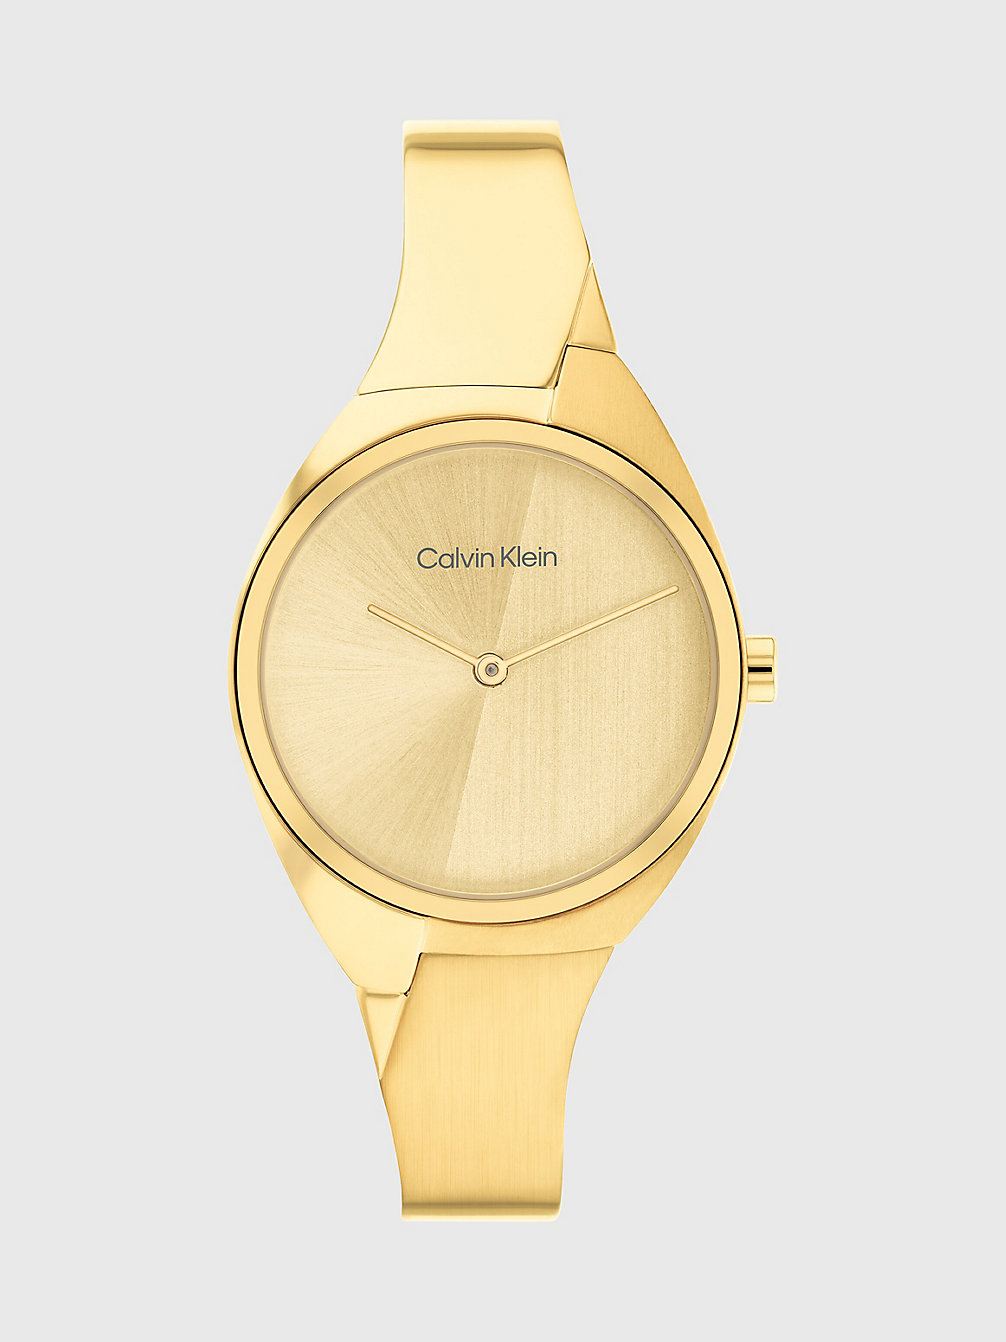 GOLD Watch - Charming undefined women Calvin Klein